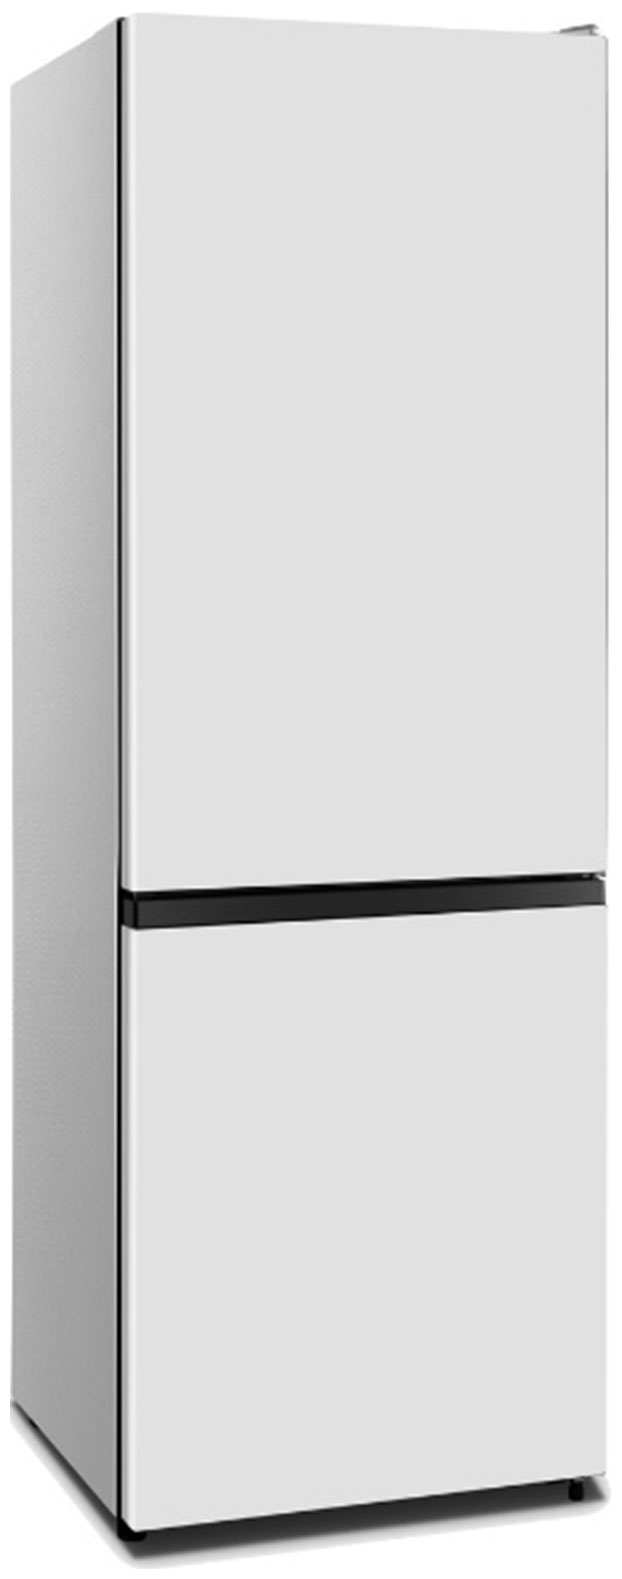 Холодильник HISENSE RB372N4AW1 белый холодильник hisense